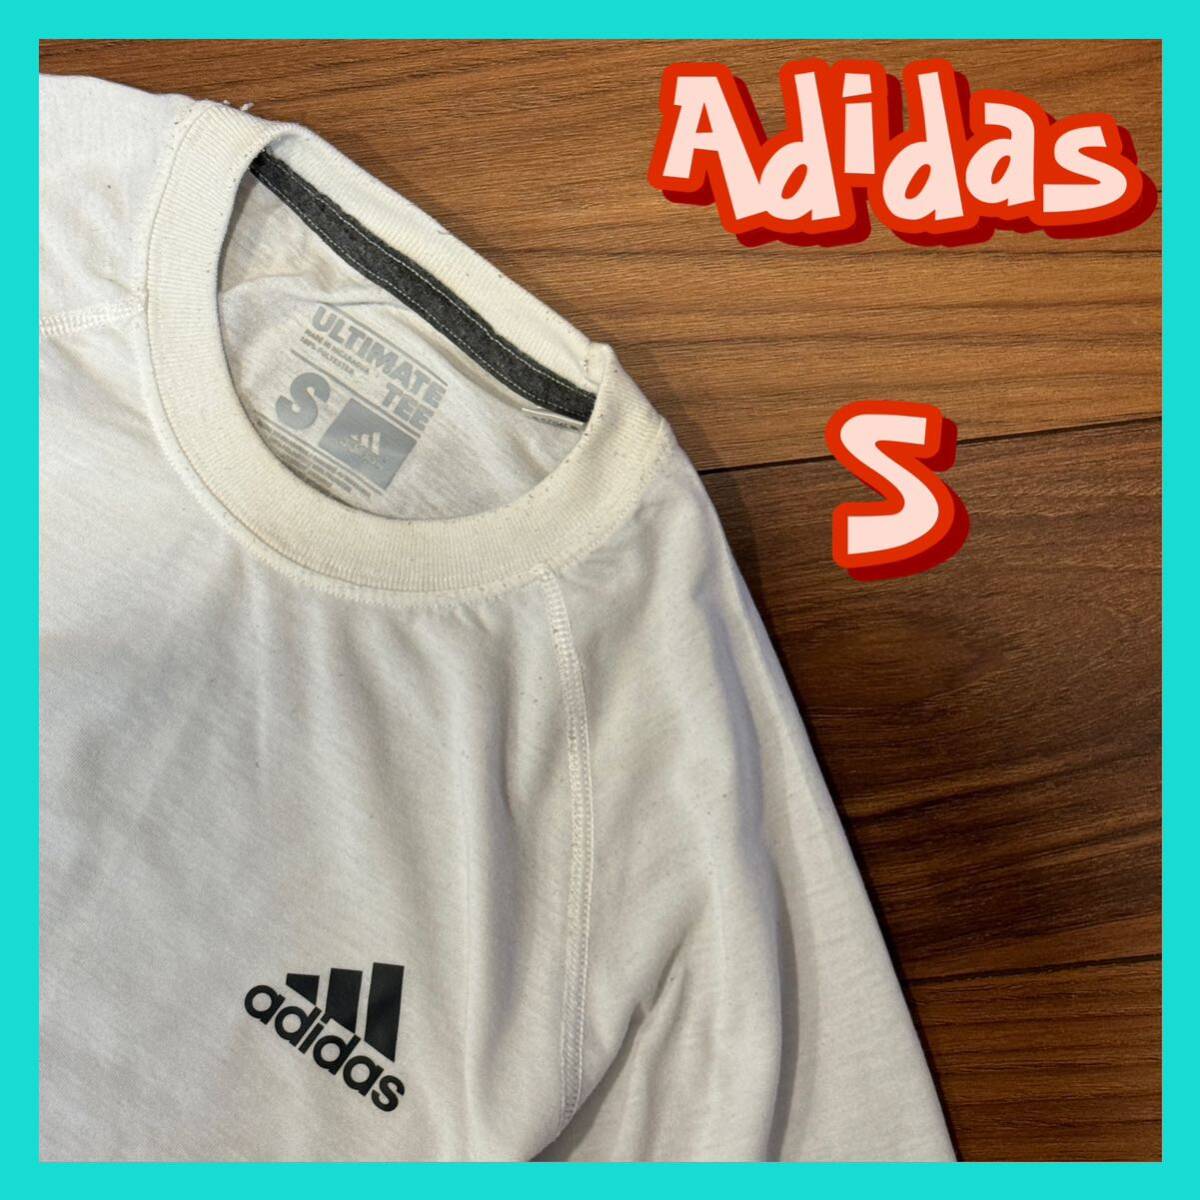 アディダス 半袖Tシャツ S メンズ ホワイト スポーツブランド ブランド古着の画像1